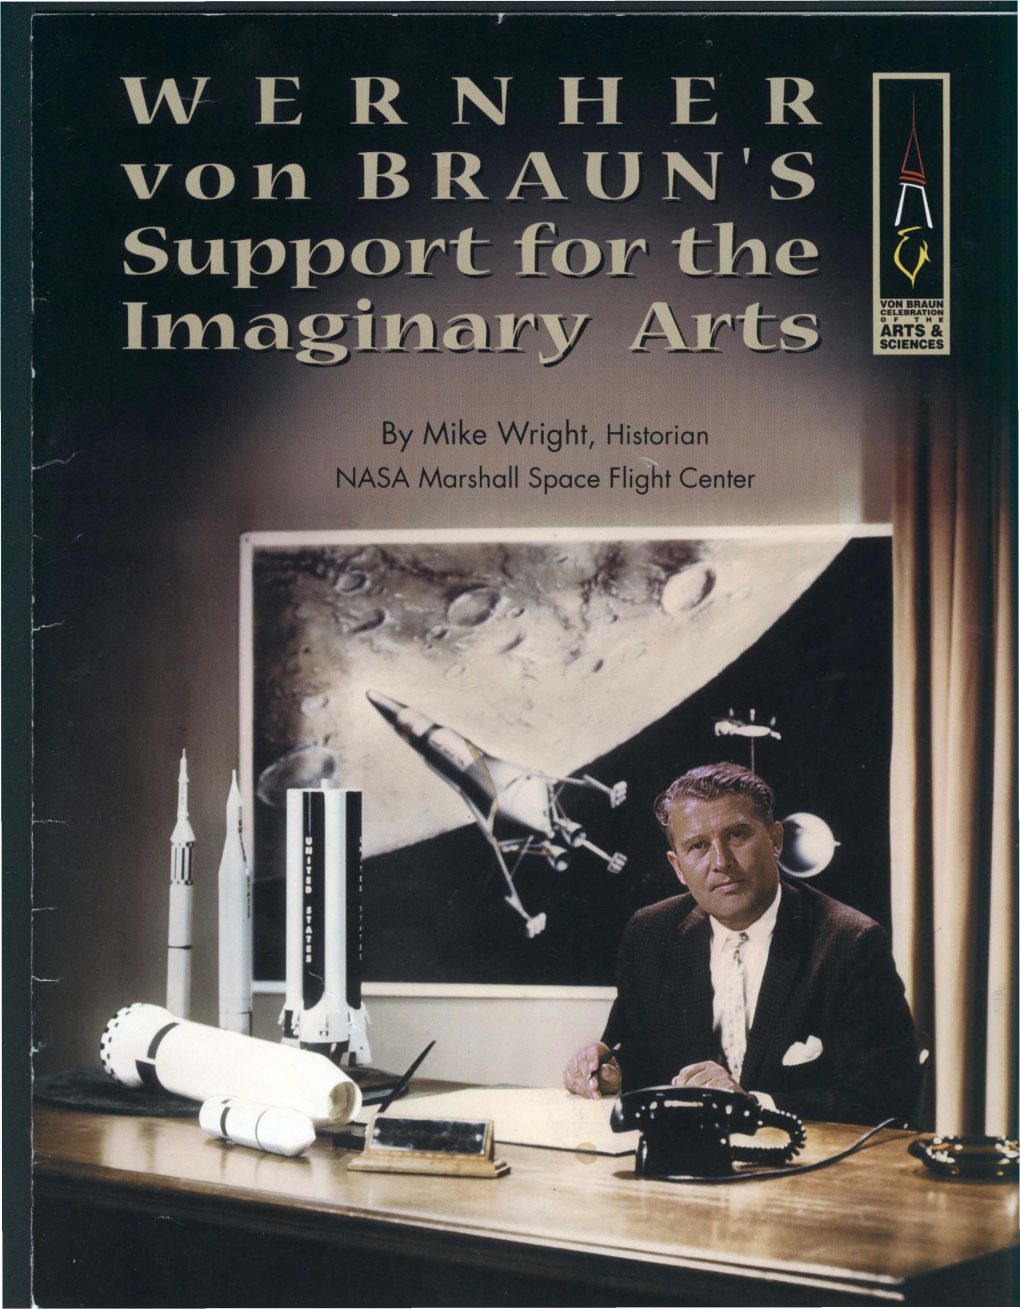 Von Braun's Busy Schedule Left on the Moon in 1969